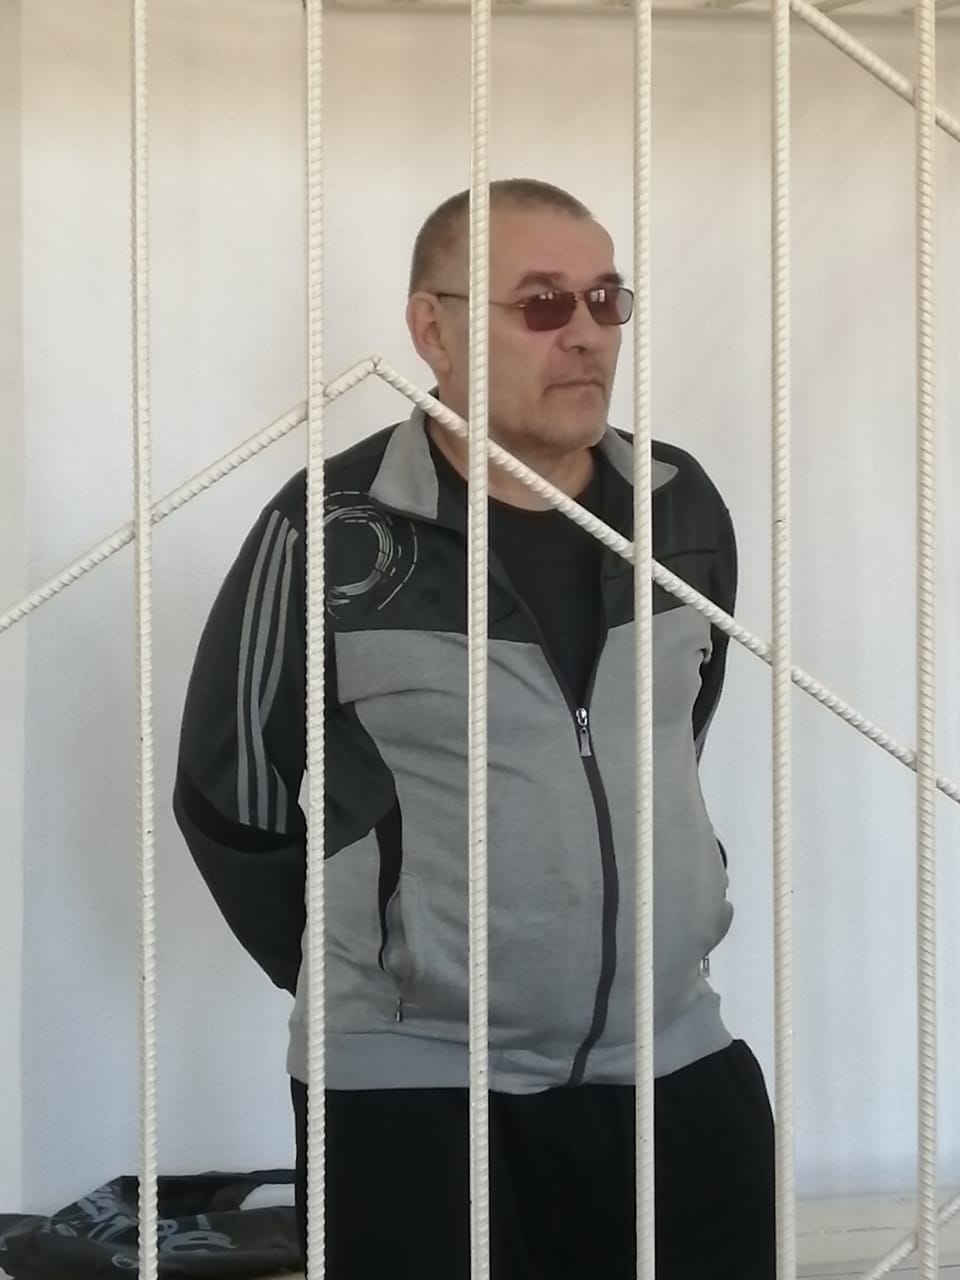 Обвиняемый в убийстве матери мужчина предстал перед судом в Краснокаменске